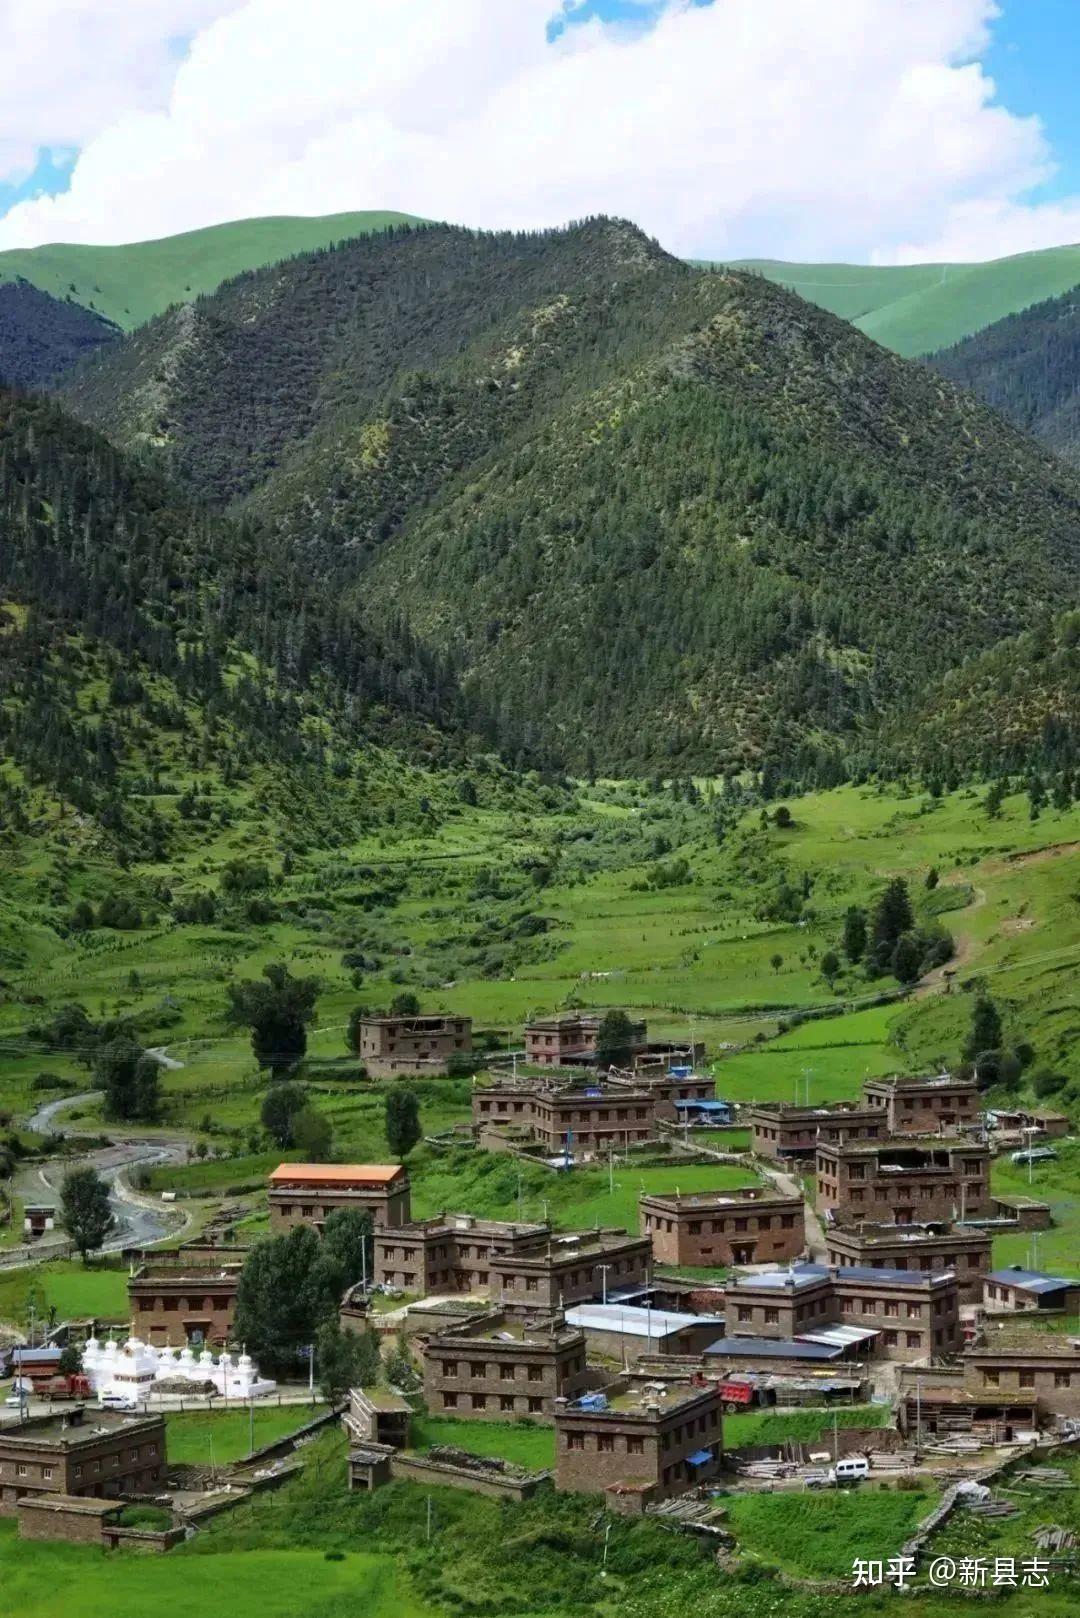 四川甘孜雅江县，被誉为“悬崖之城”，成为了川藏线上的著名景点 -6park.com